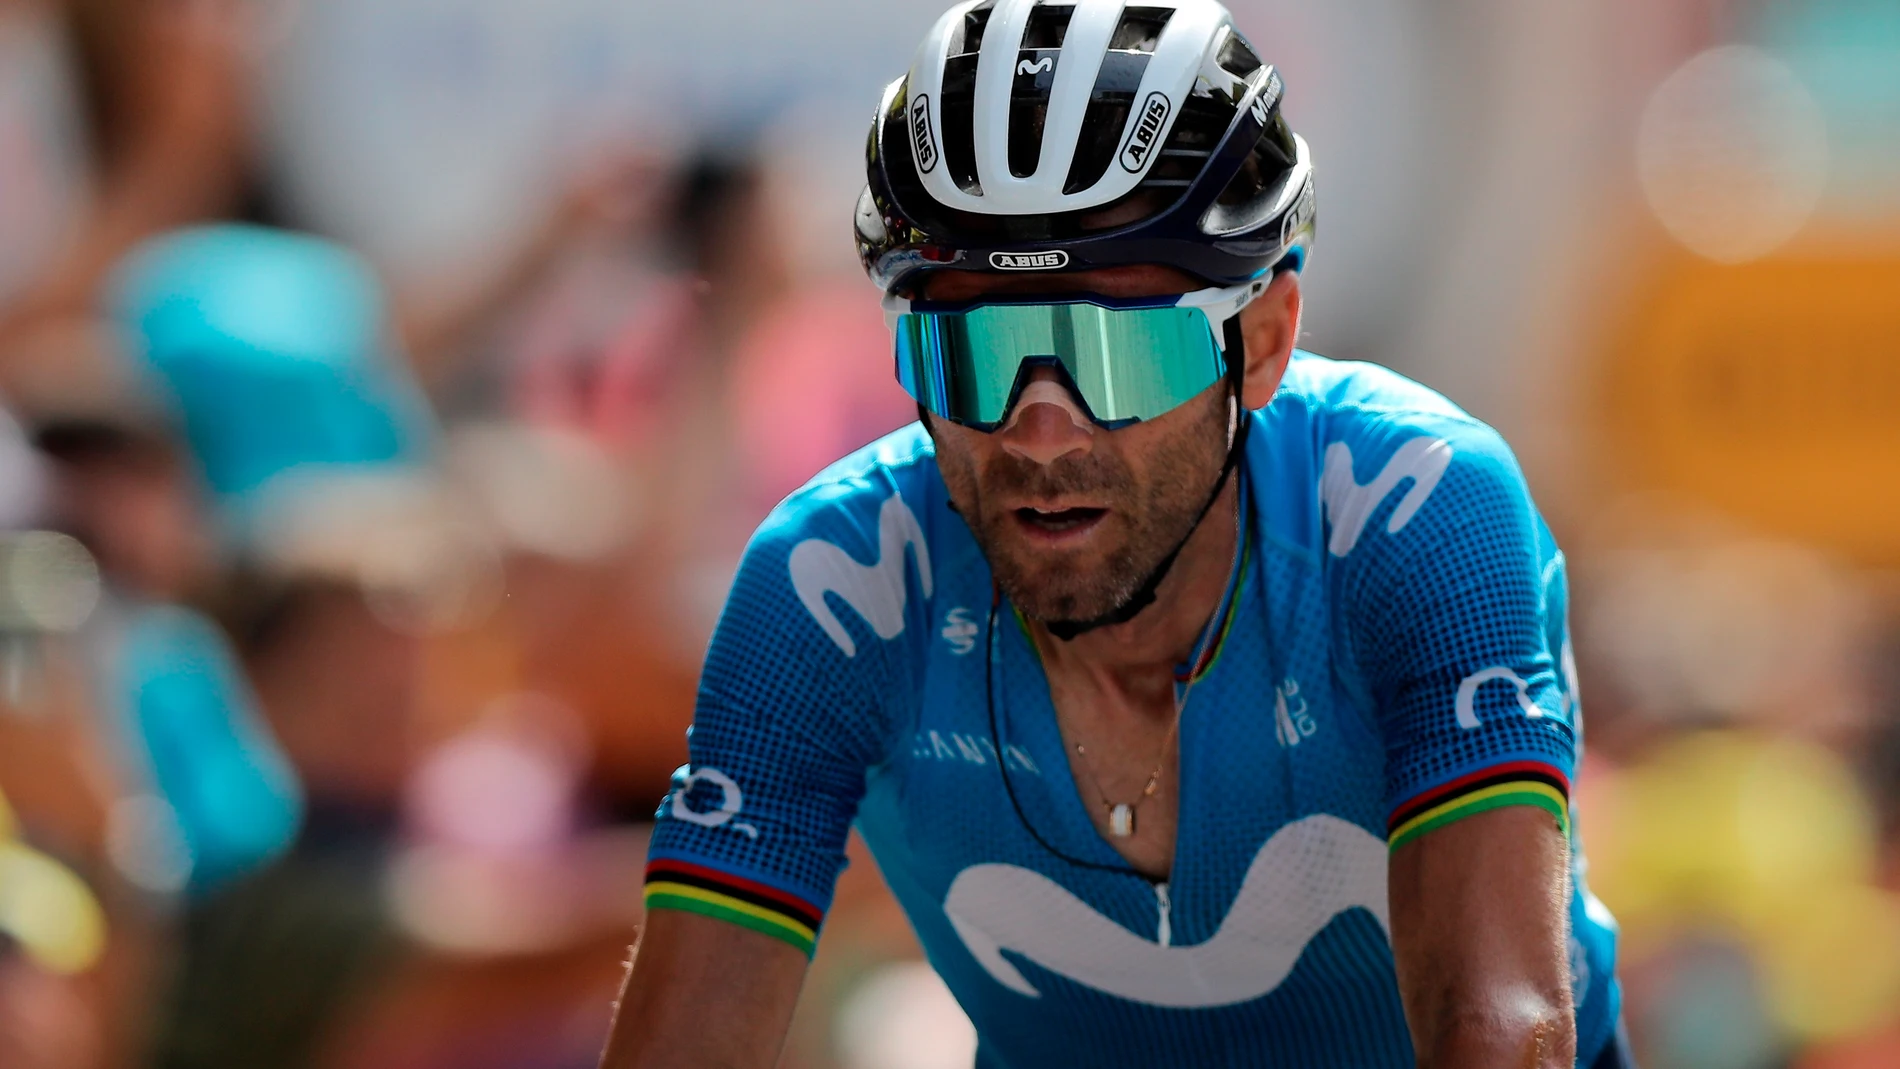 Alejandro Valverde entra en meta en Andorra. Fue segundo en el primer contacto con los Pirineos